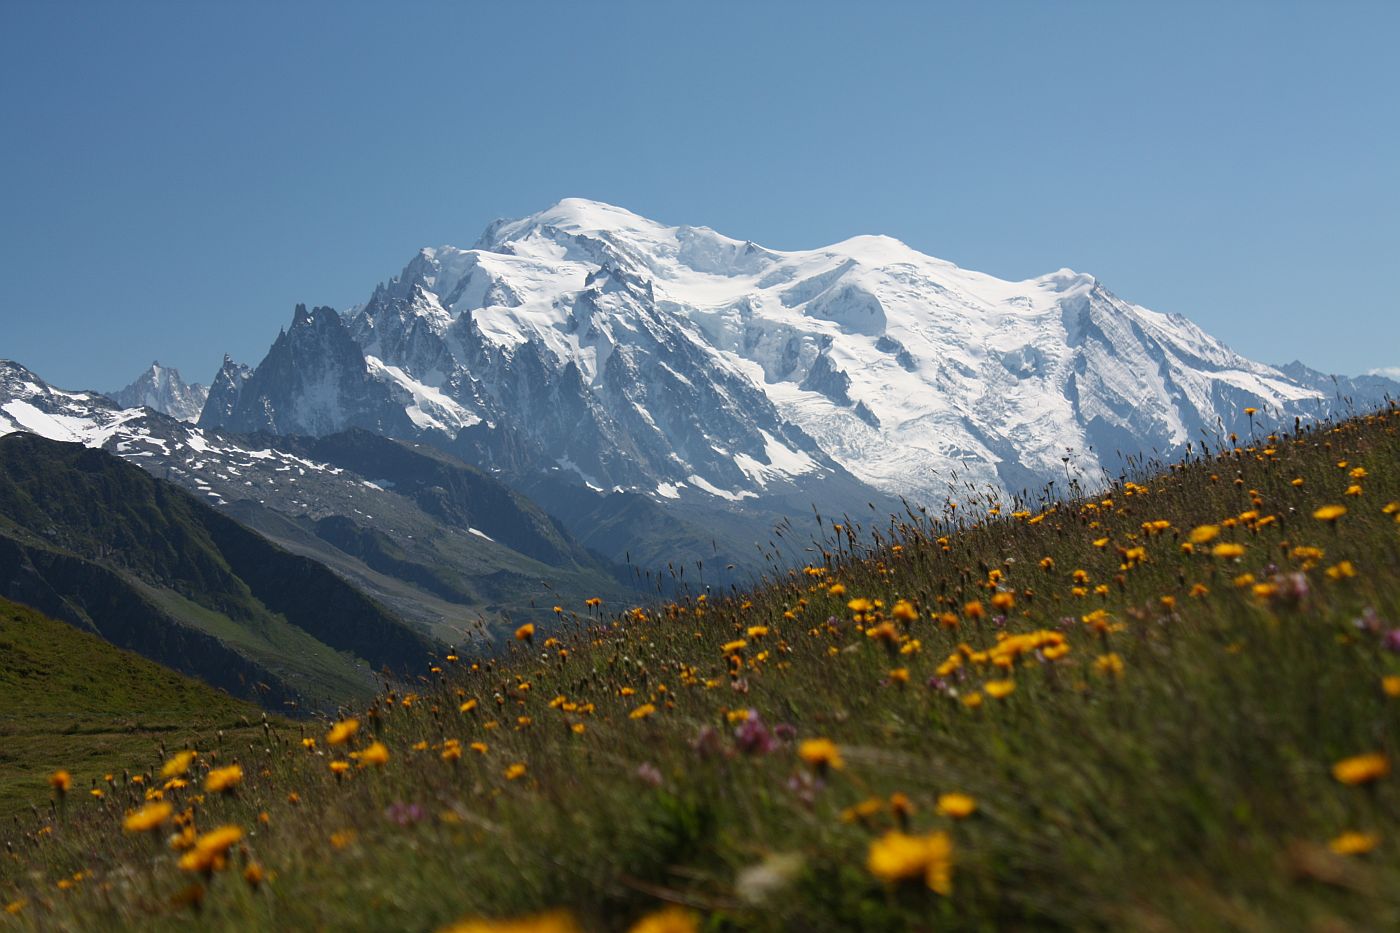 Das "Dach" des alten Europa - der Mt. Blanc (4810m)